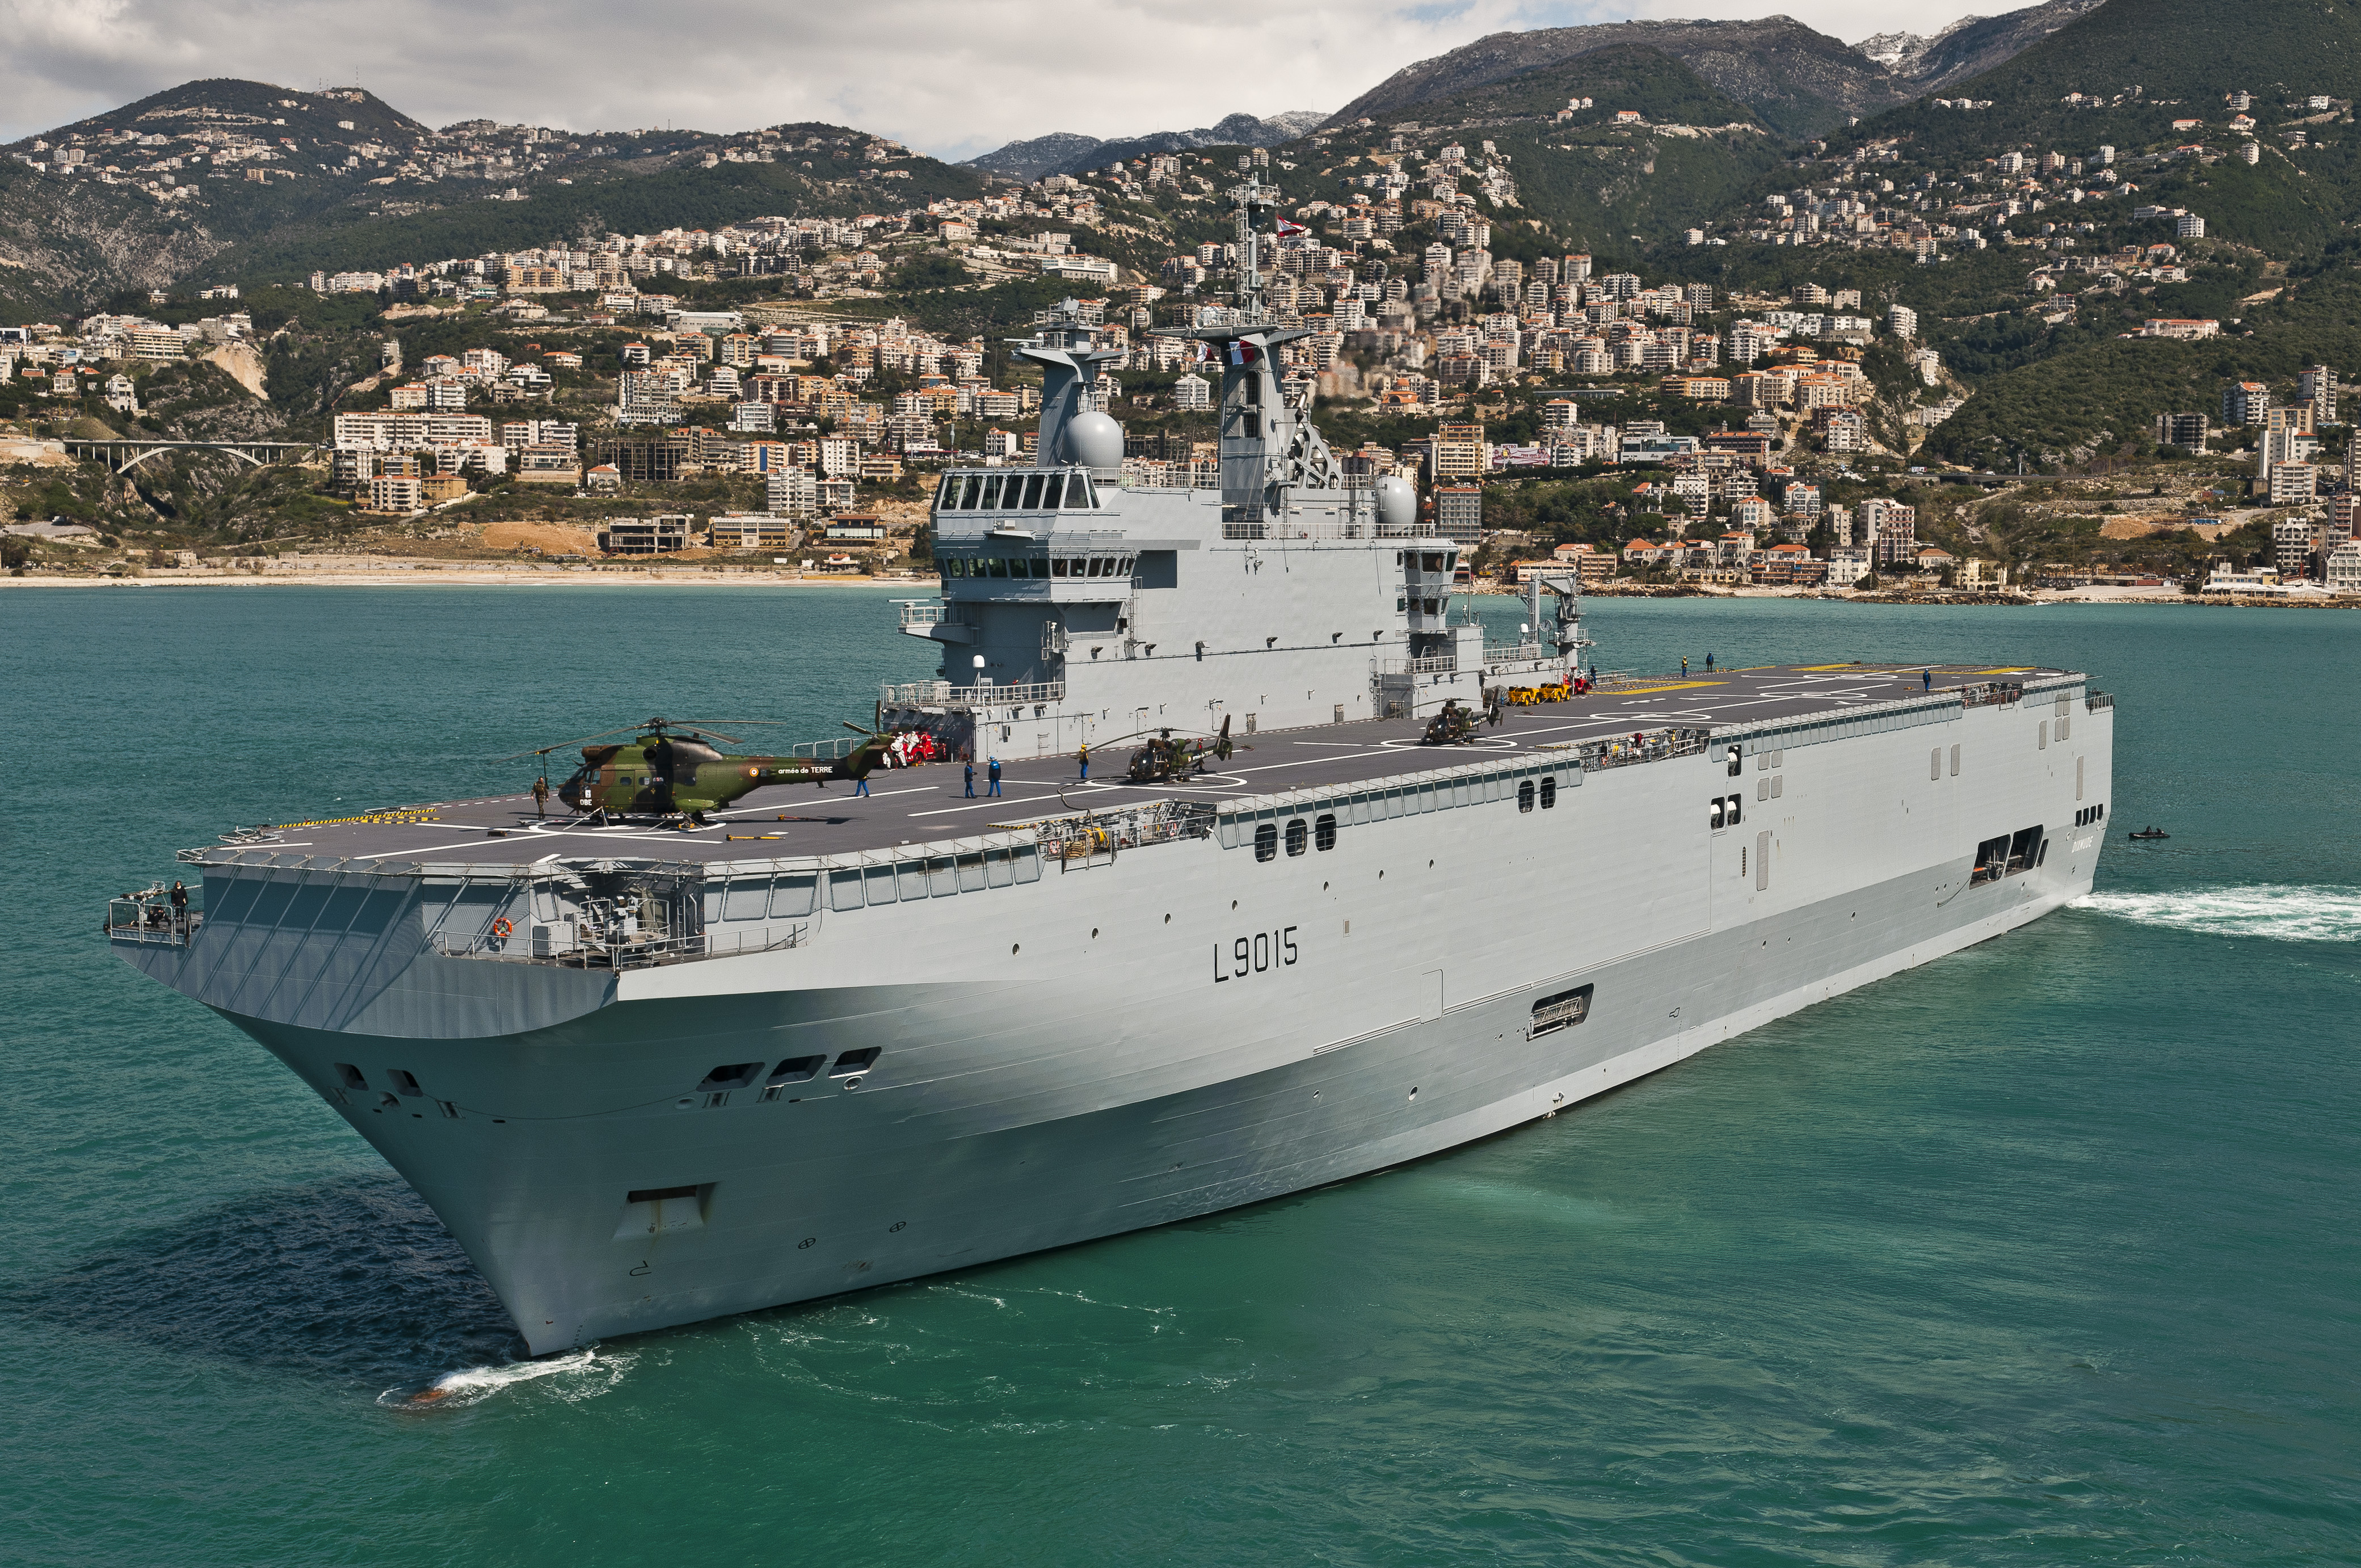     La France va déployer un porte-hélicoptère aux Antilles

